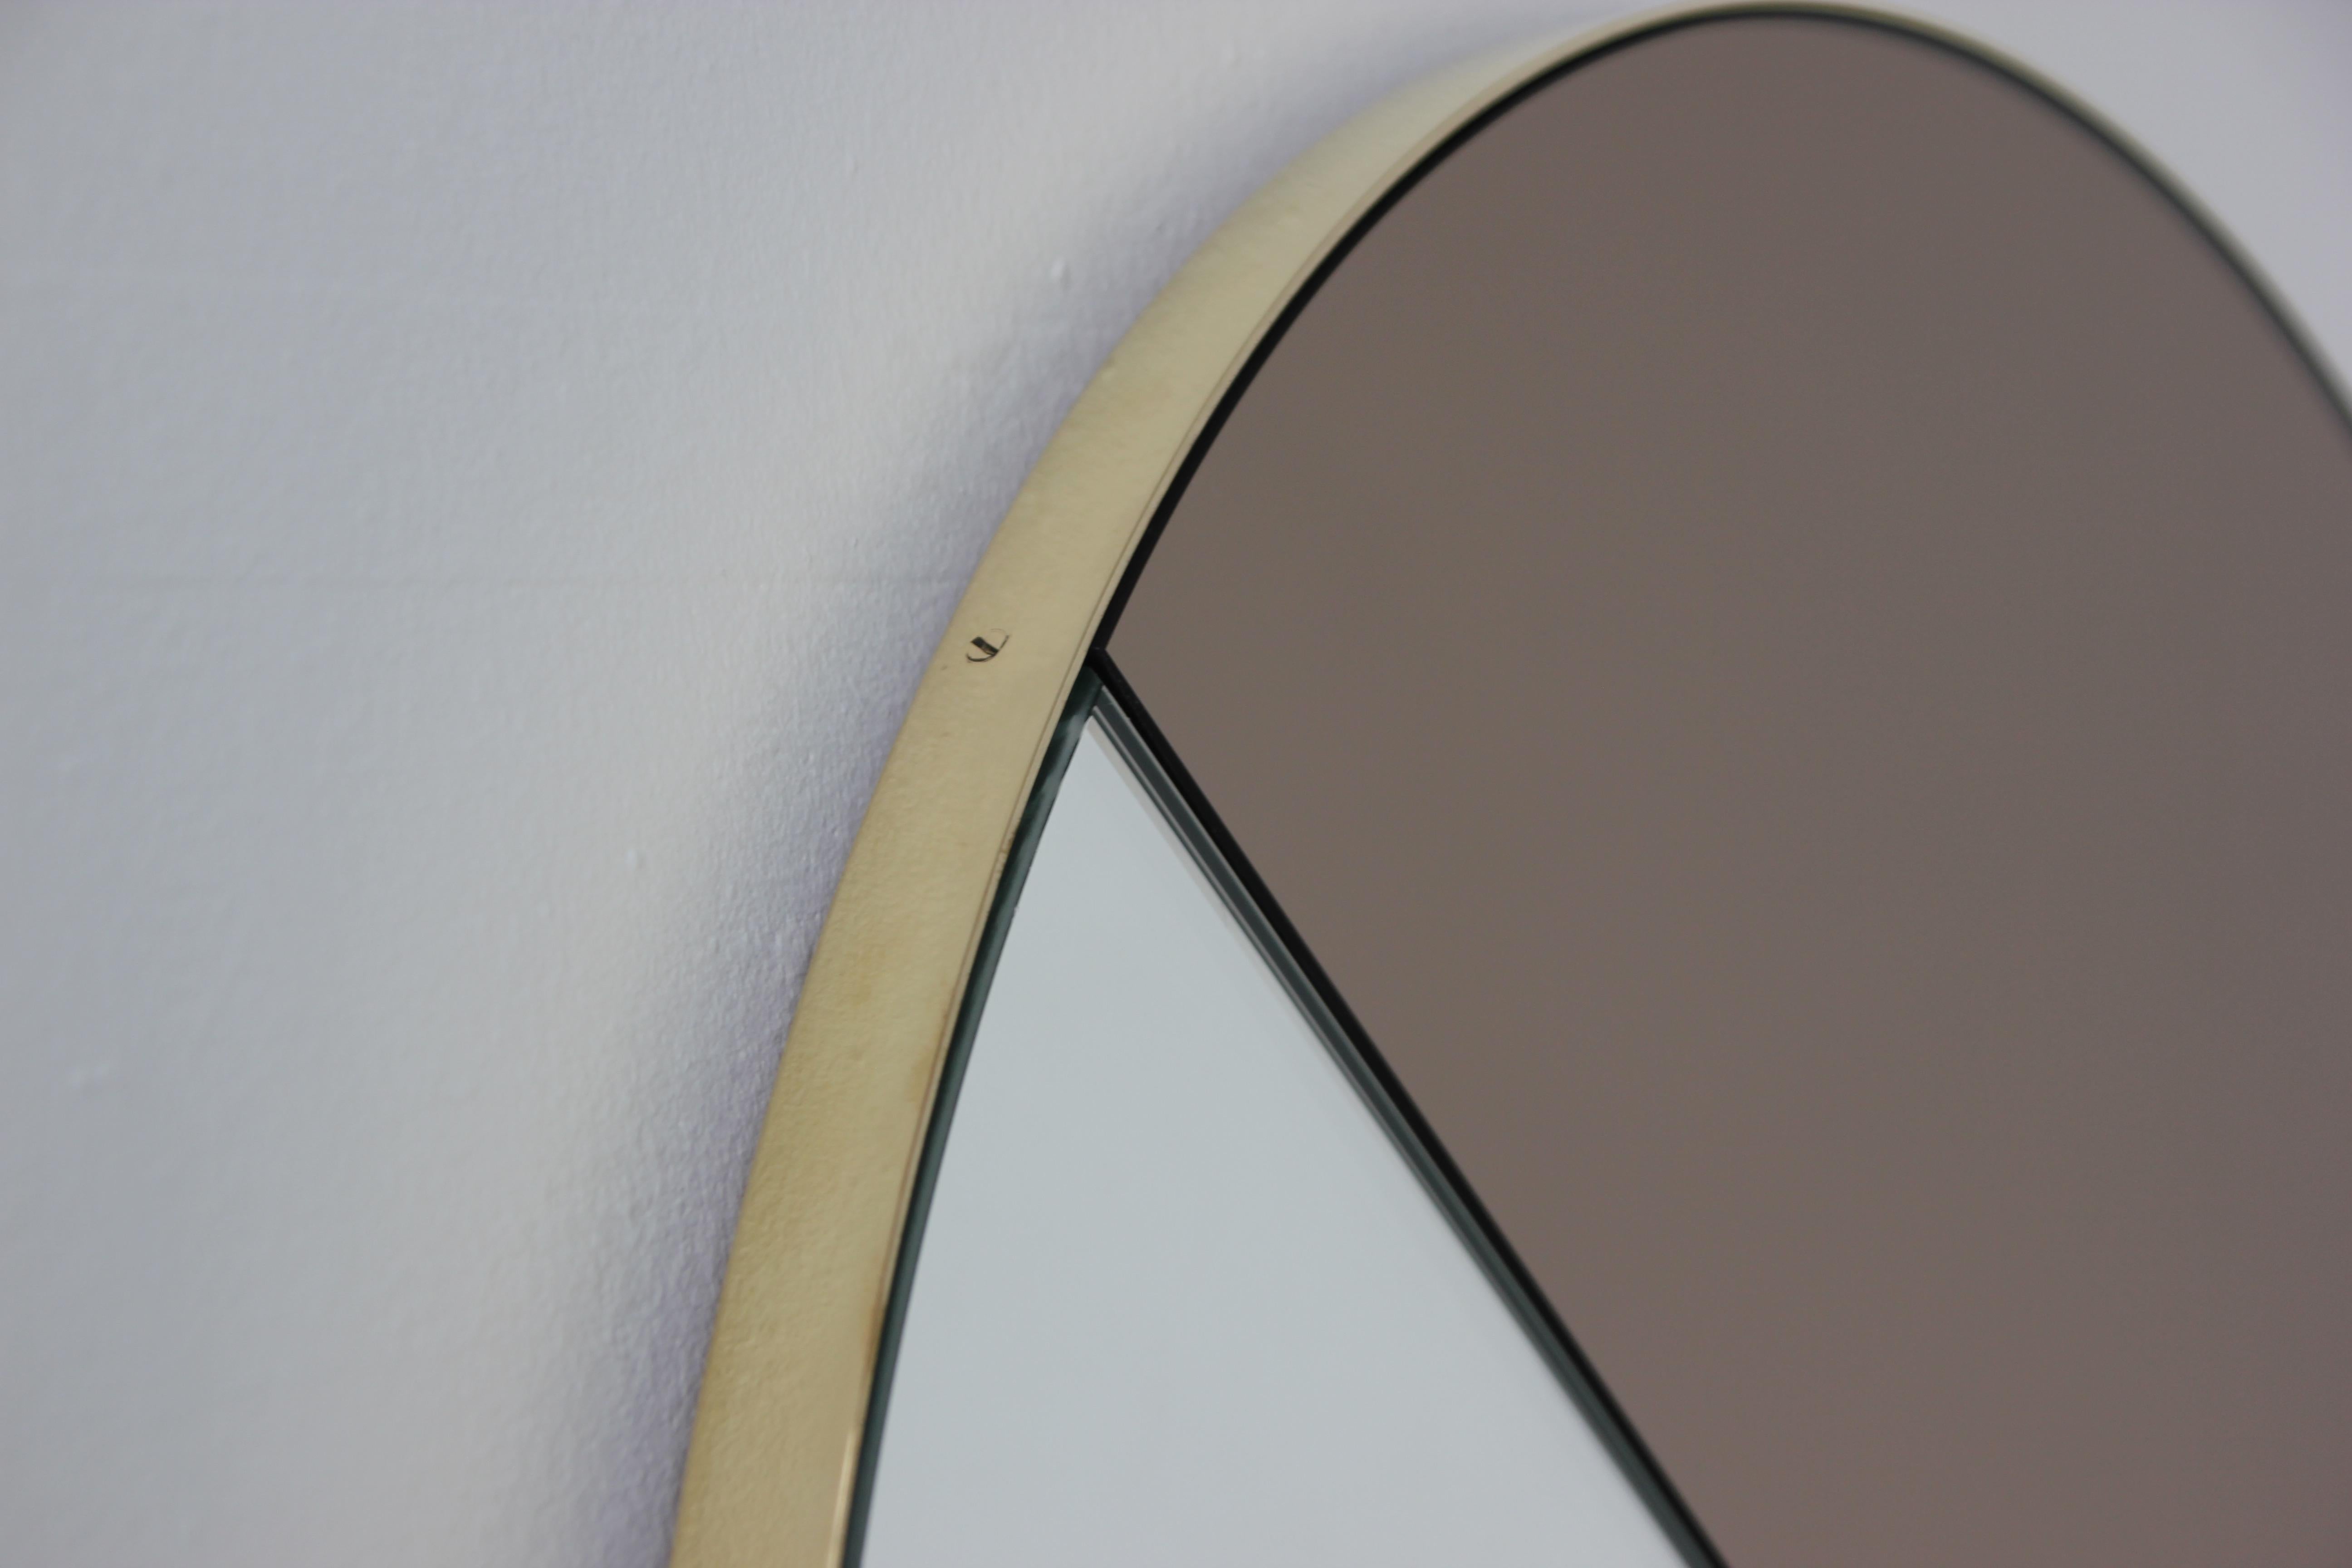 Miroir contemporain mixte bronze et argent teinté Dualis Orbis avec un cadre en laiton brossé. Conçu et fabriqué à la main à Londres, au Royaume-Uni.

Tous les miroirs sont équipés d'un ingénieux système de tasseaux à la française (lattes fendues)